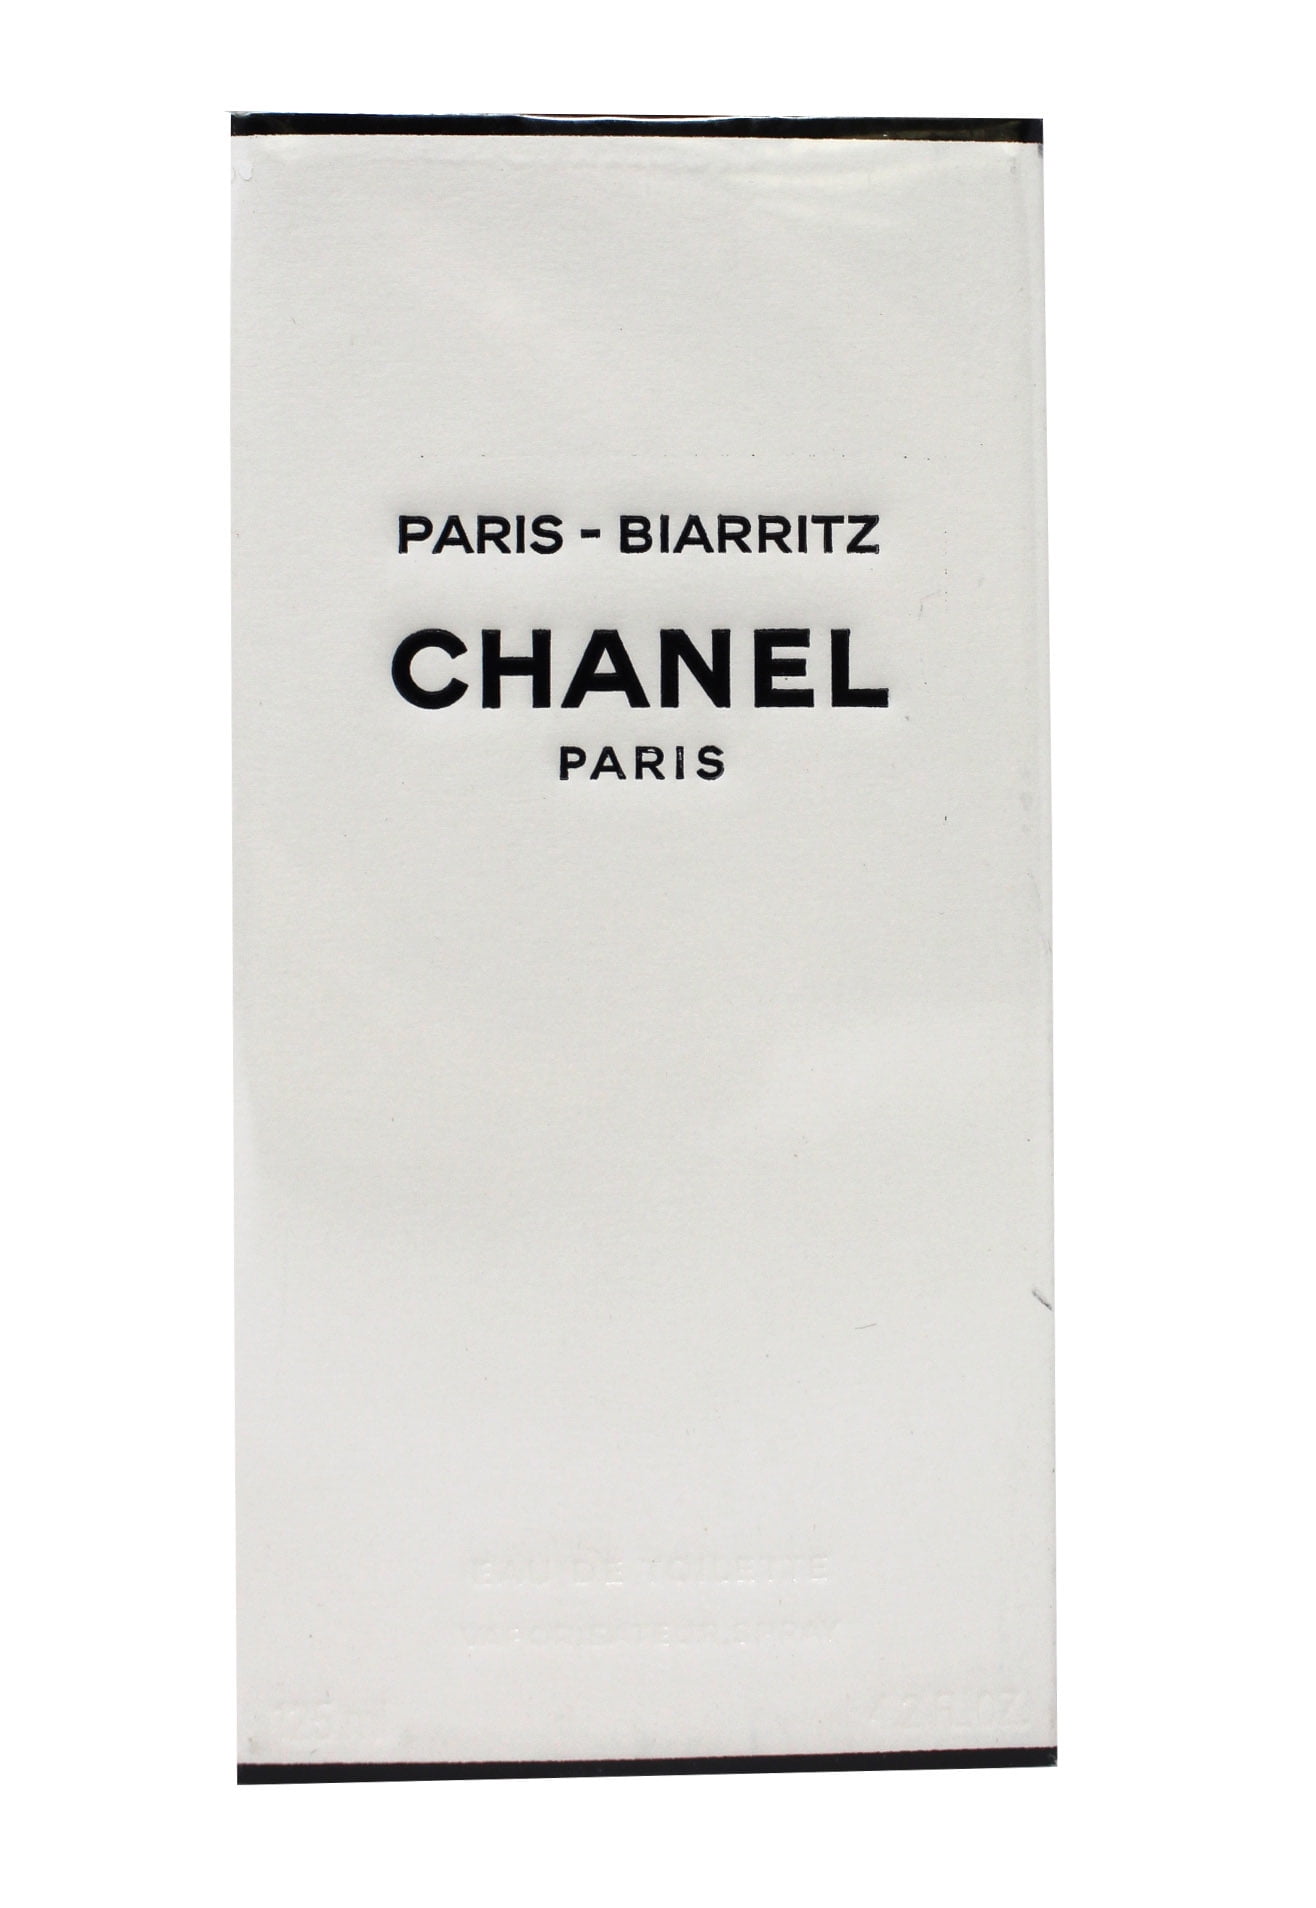 Chanel Paris Biarritz by Chanel Eau De Toilette Spray 4.2 oz 